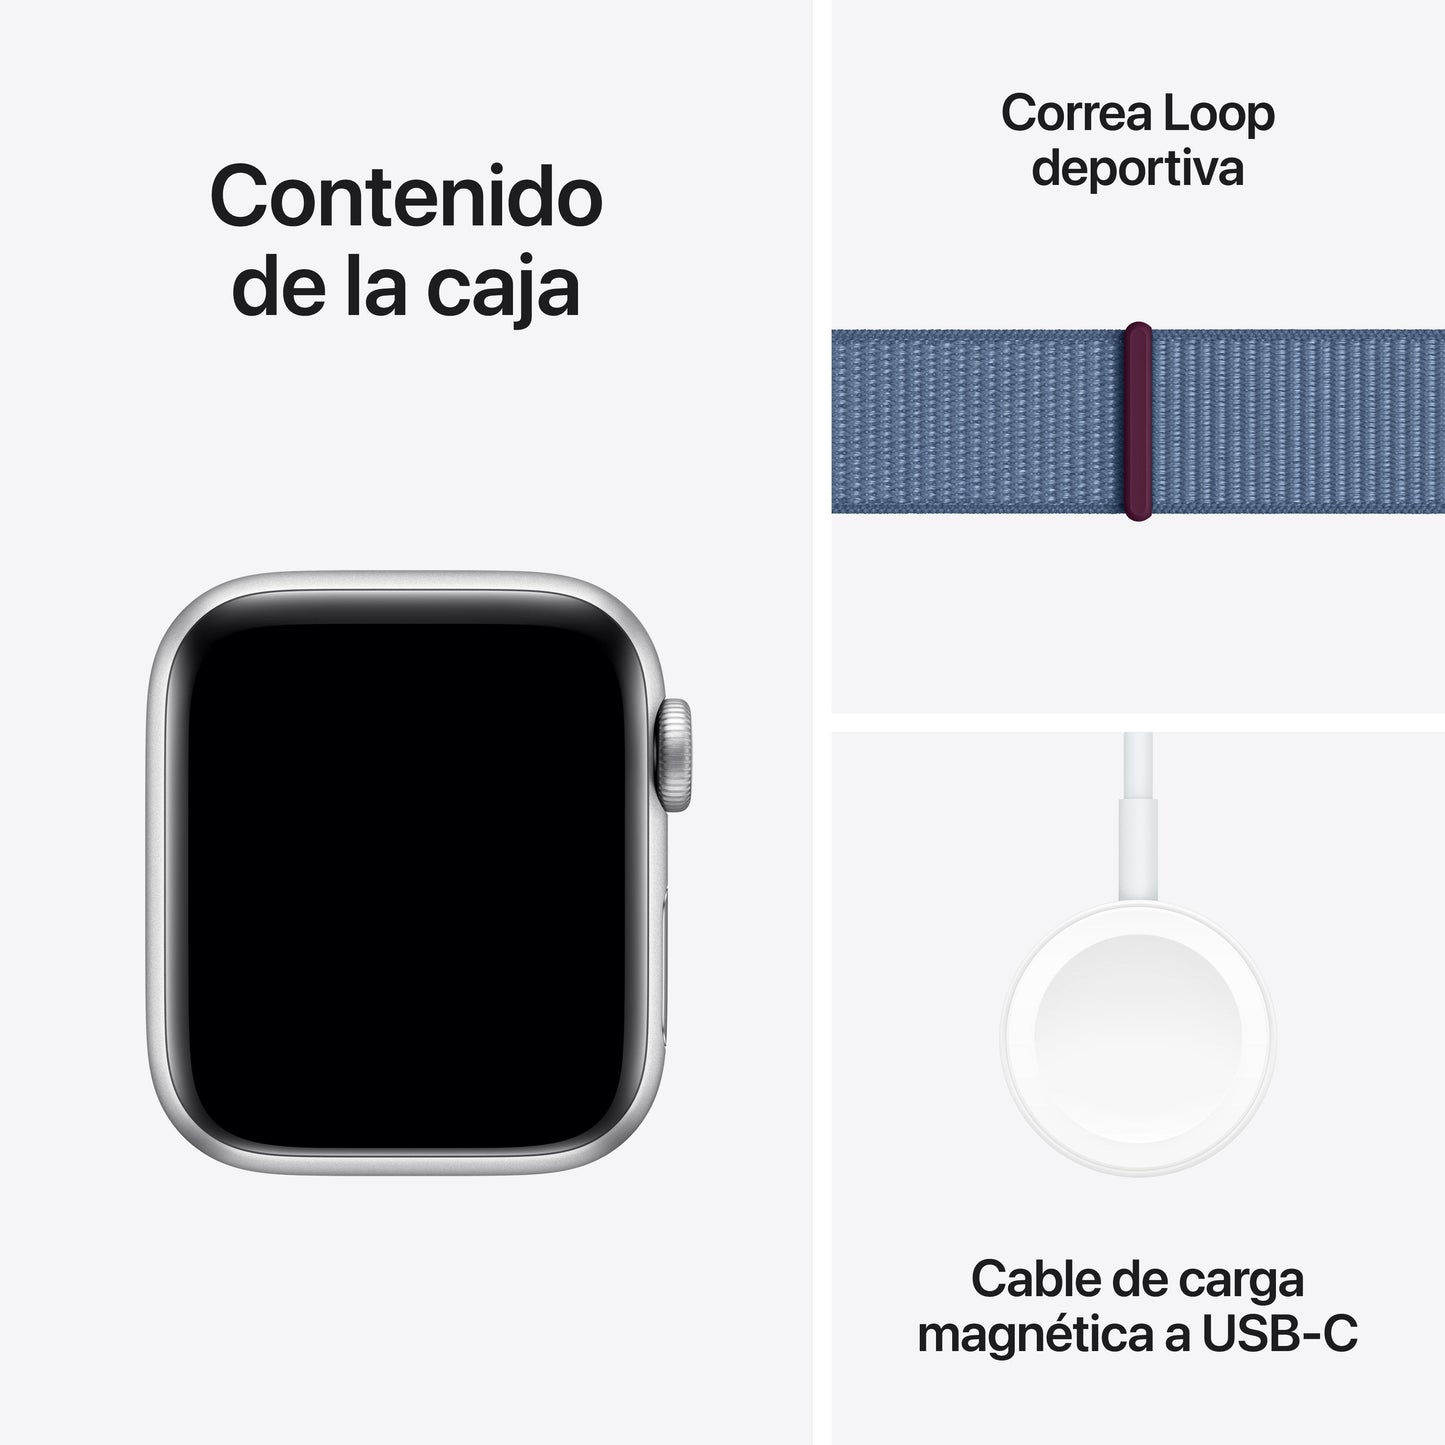 Apple Watch SE (GPS + Cellular) - Caja de aluminio en plata de 40 mm - Correa Loop deportiva azul invierno